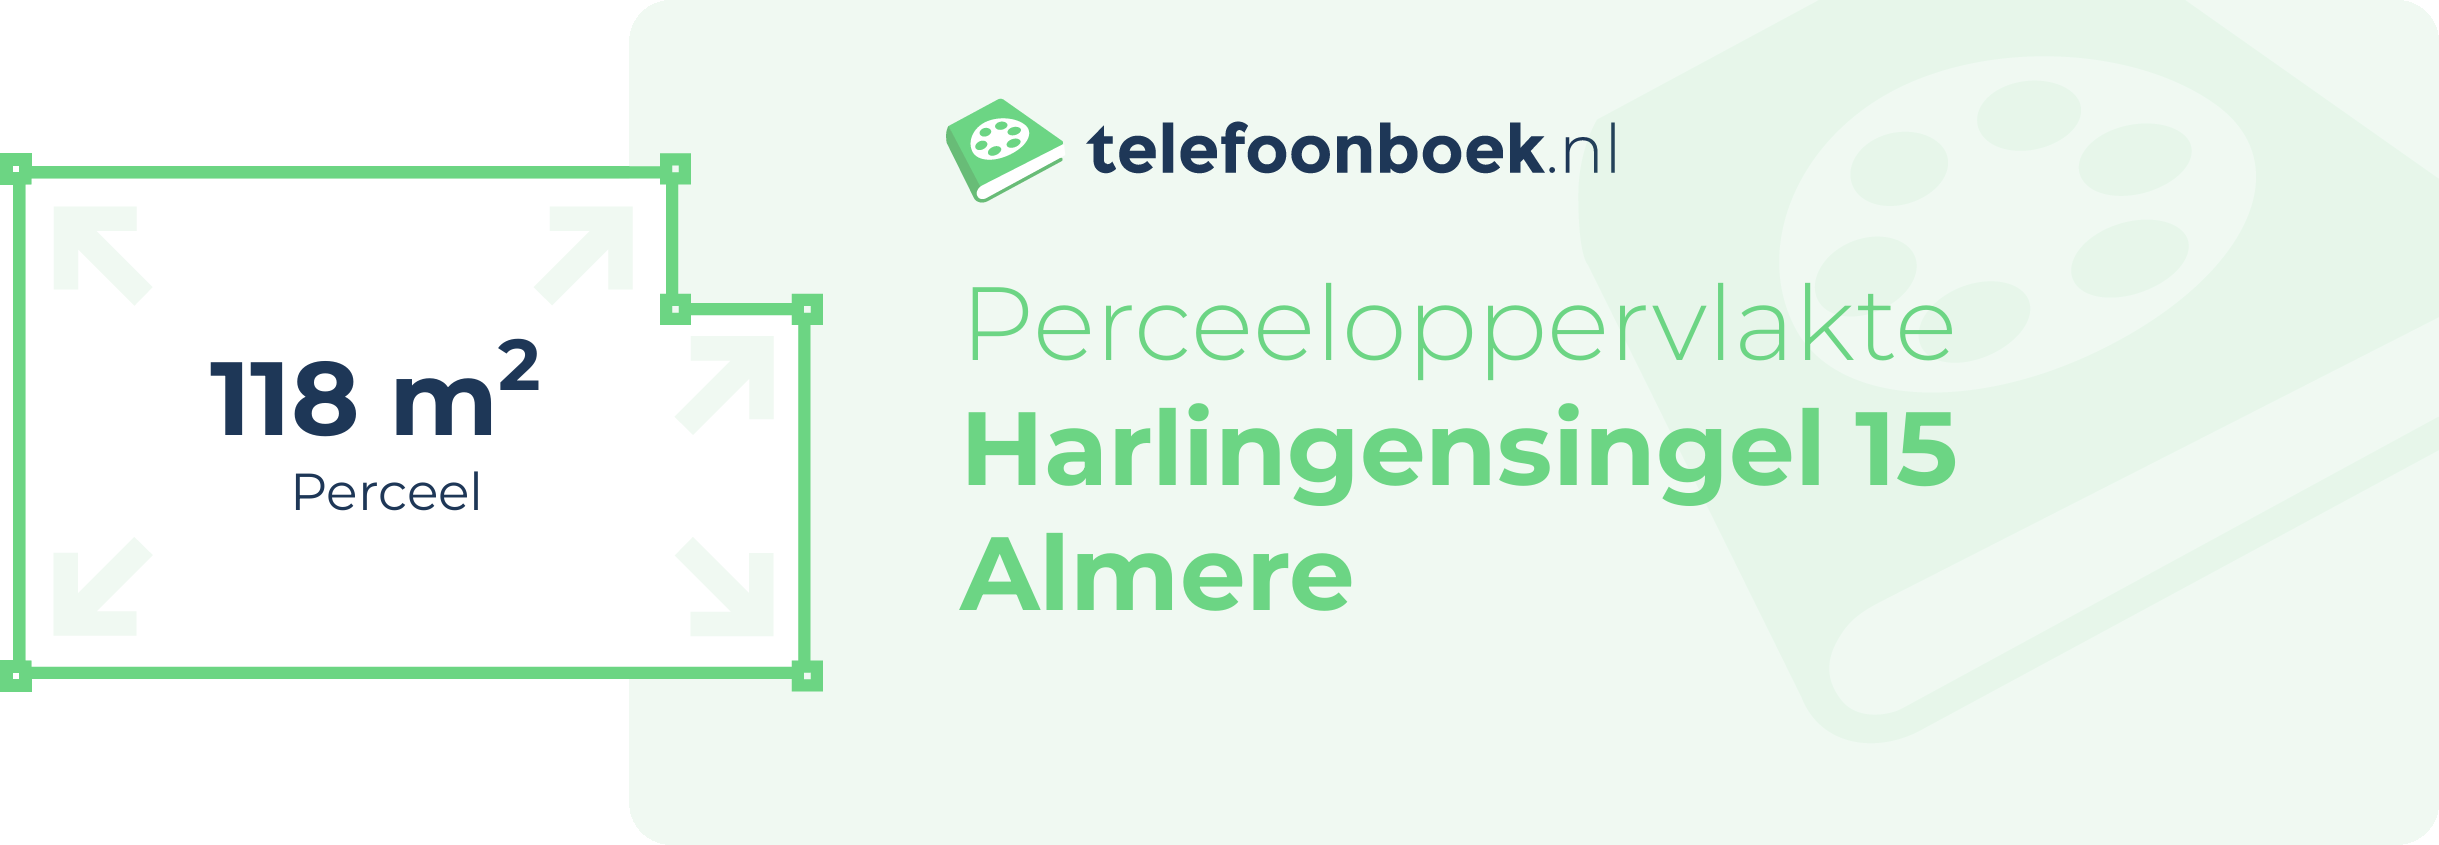 Perceeloppervlakte Harlingensingel 15 Almere